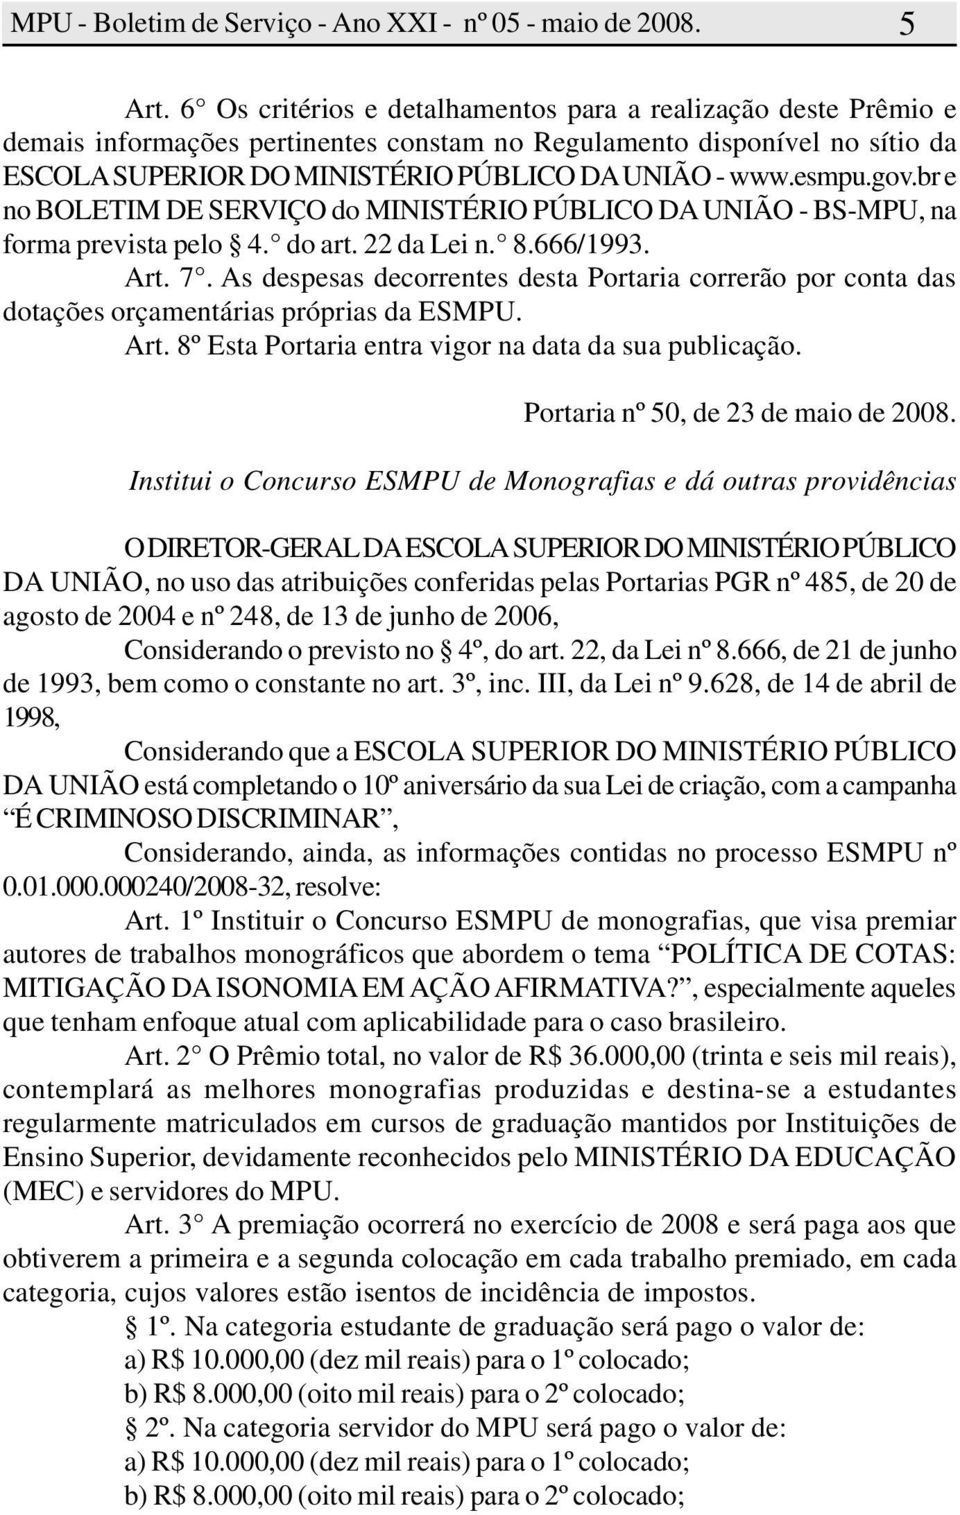 gov.br e no BOLETIM DE SERVIÇO do MINISTÉRIO PÚBLICO DA UNIÃO - BS-MPU, na forma prevista pelo 4. do art. 22 da Lei n. 8.666/1993. Art. 7.